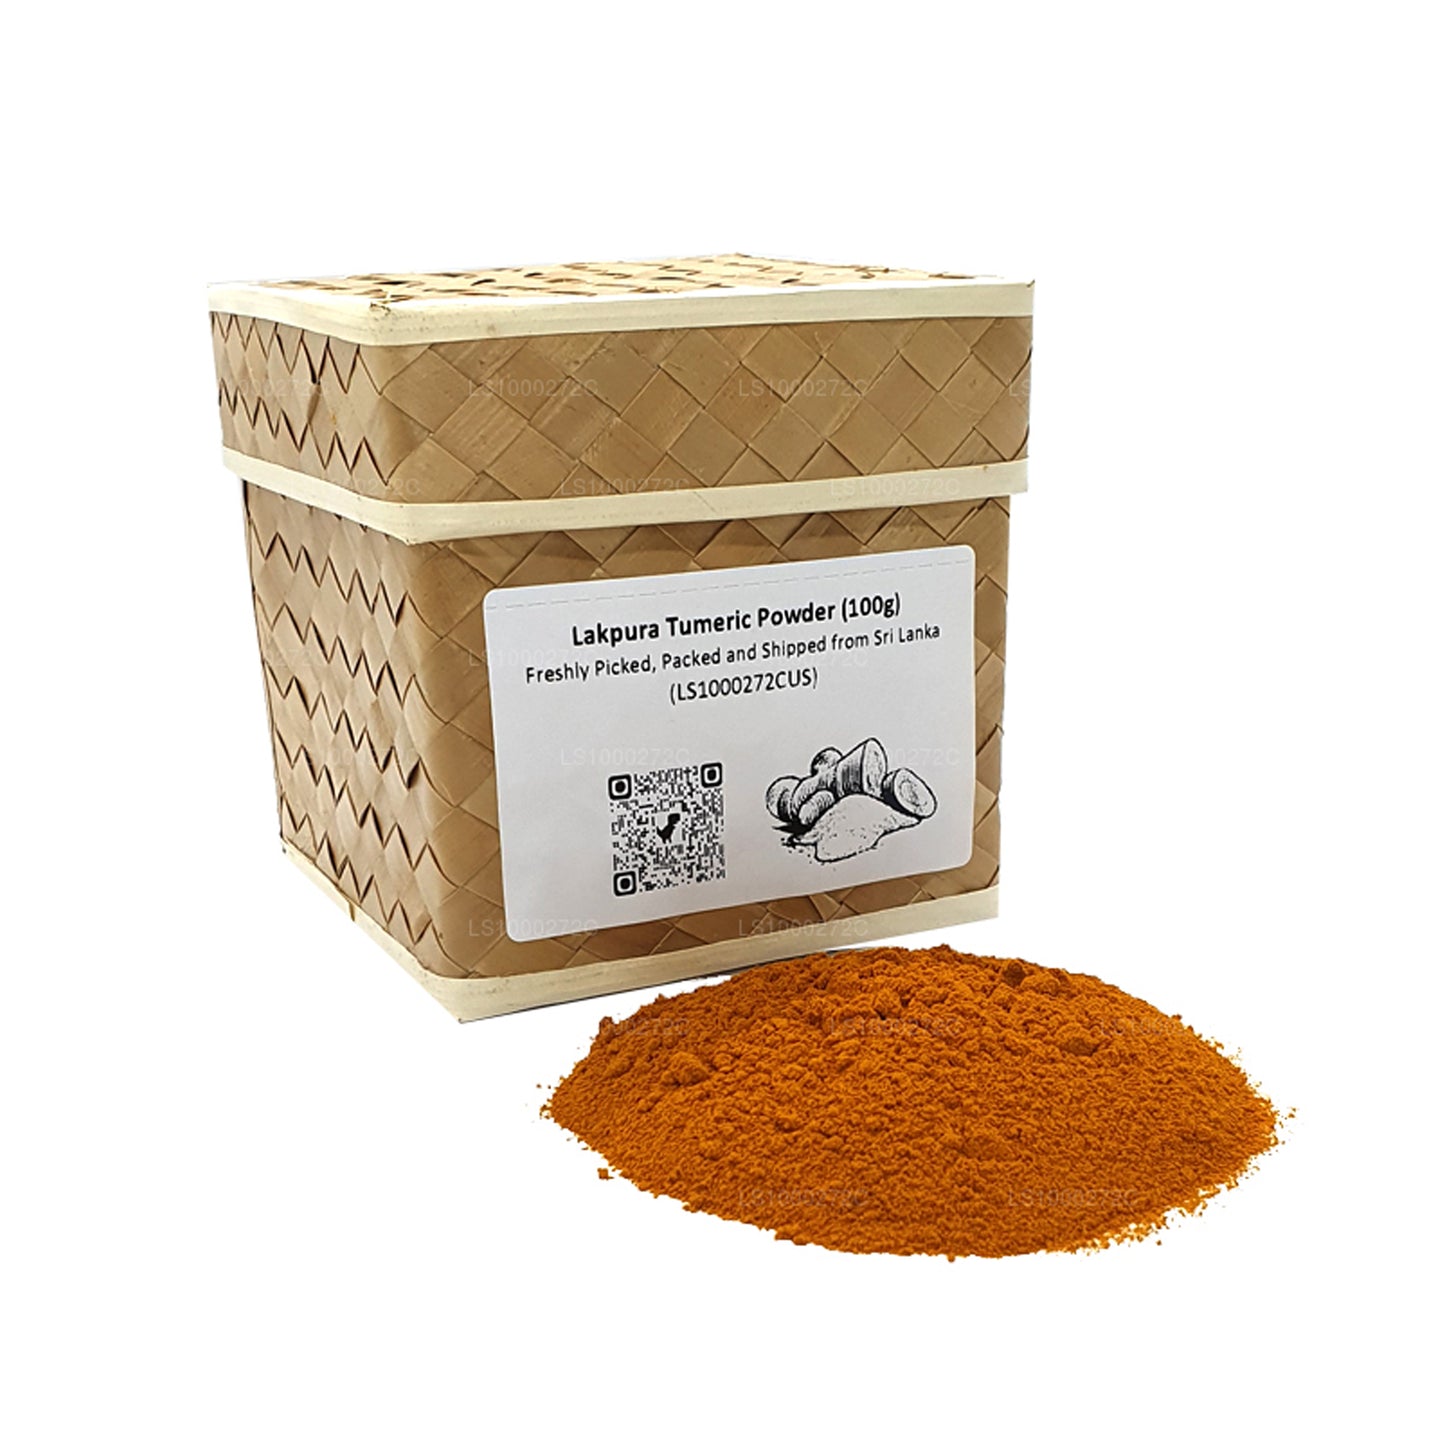 Lakpura Turmeric Powder (100g)